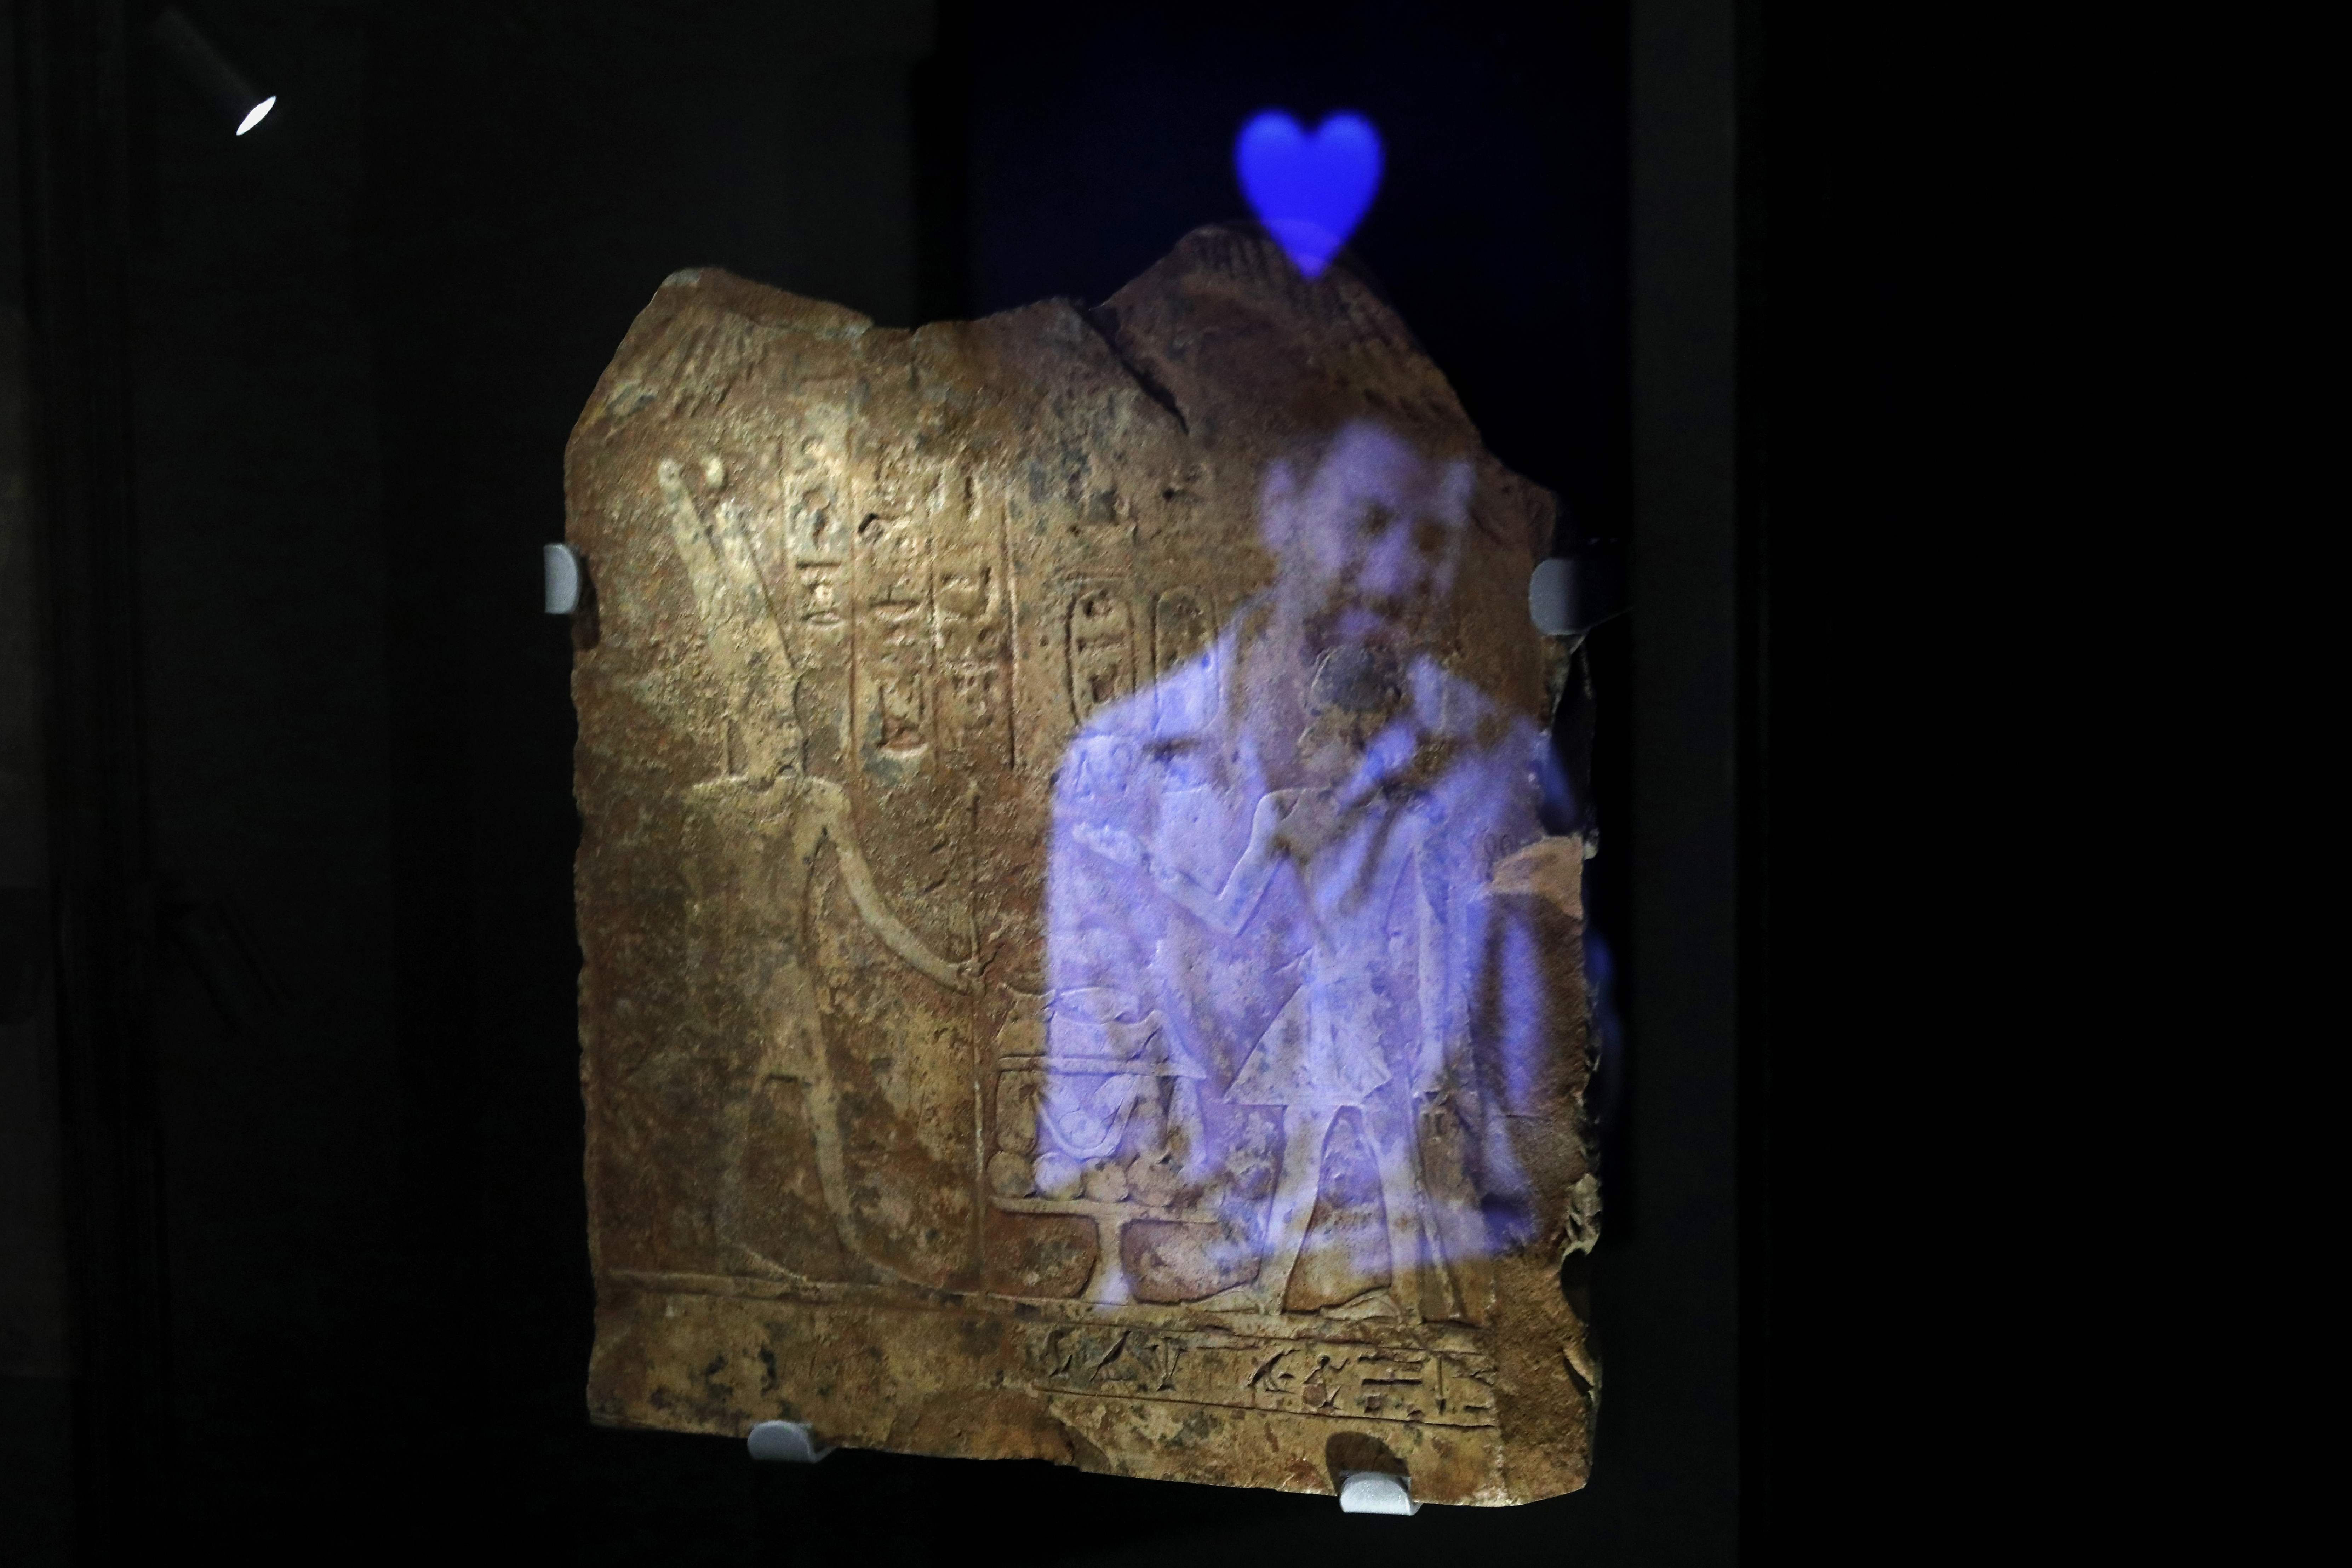 Una instalación de vídeo muestra la imagen de un hombre con el emoji de un corazón azul reflejado en una placa egipcia antigua grabada con jeroglíficos, parte del concepto de esta exposición en Israel.  (Foto Prensa Libre: AFP)